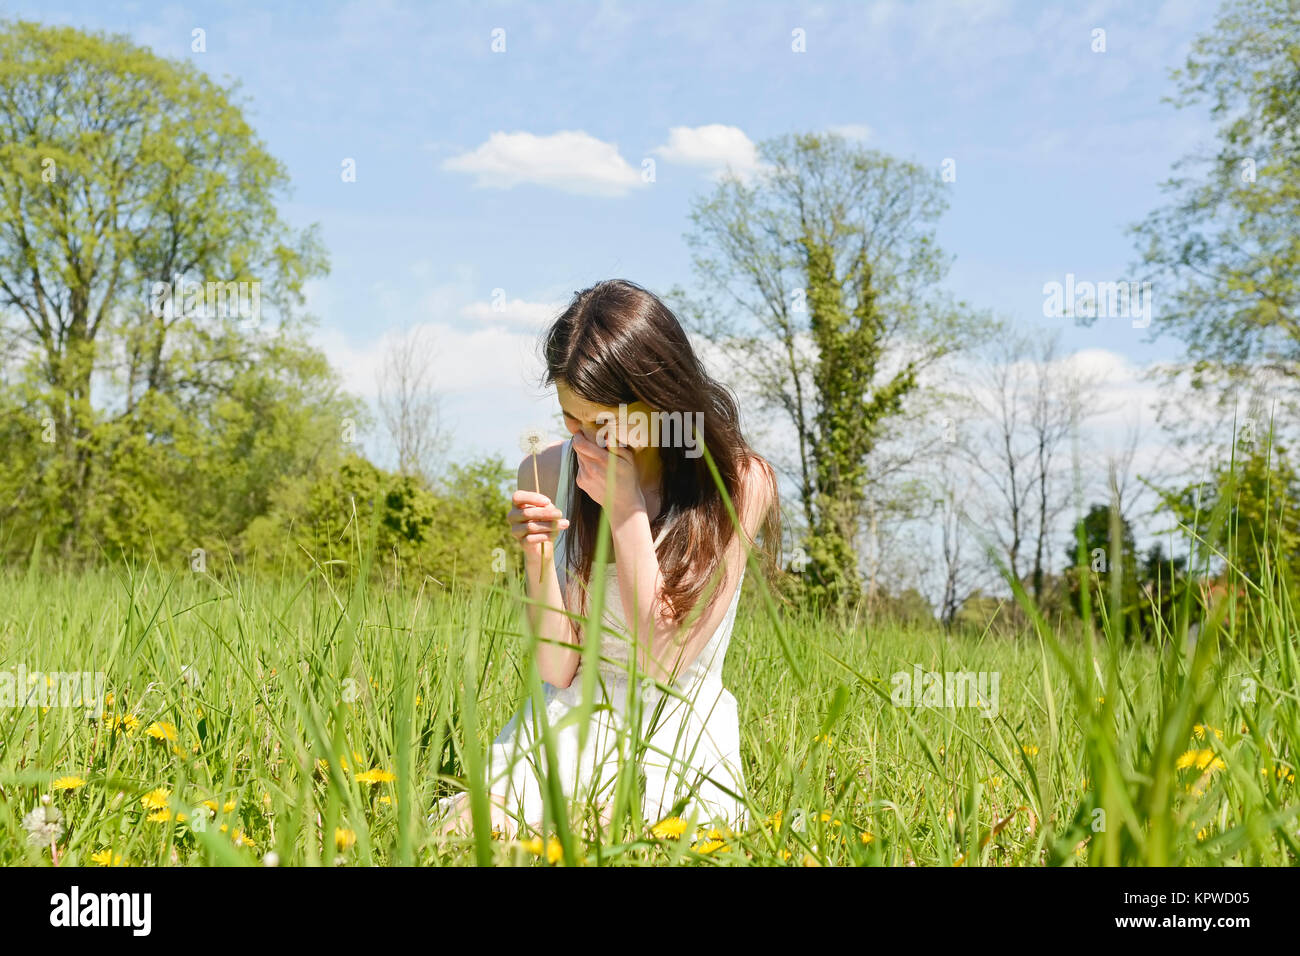 junge frau niest auf einer blumenwiese Stock Photo